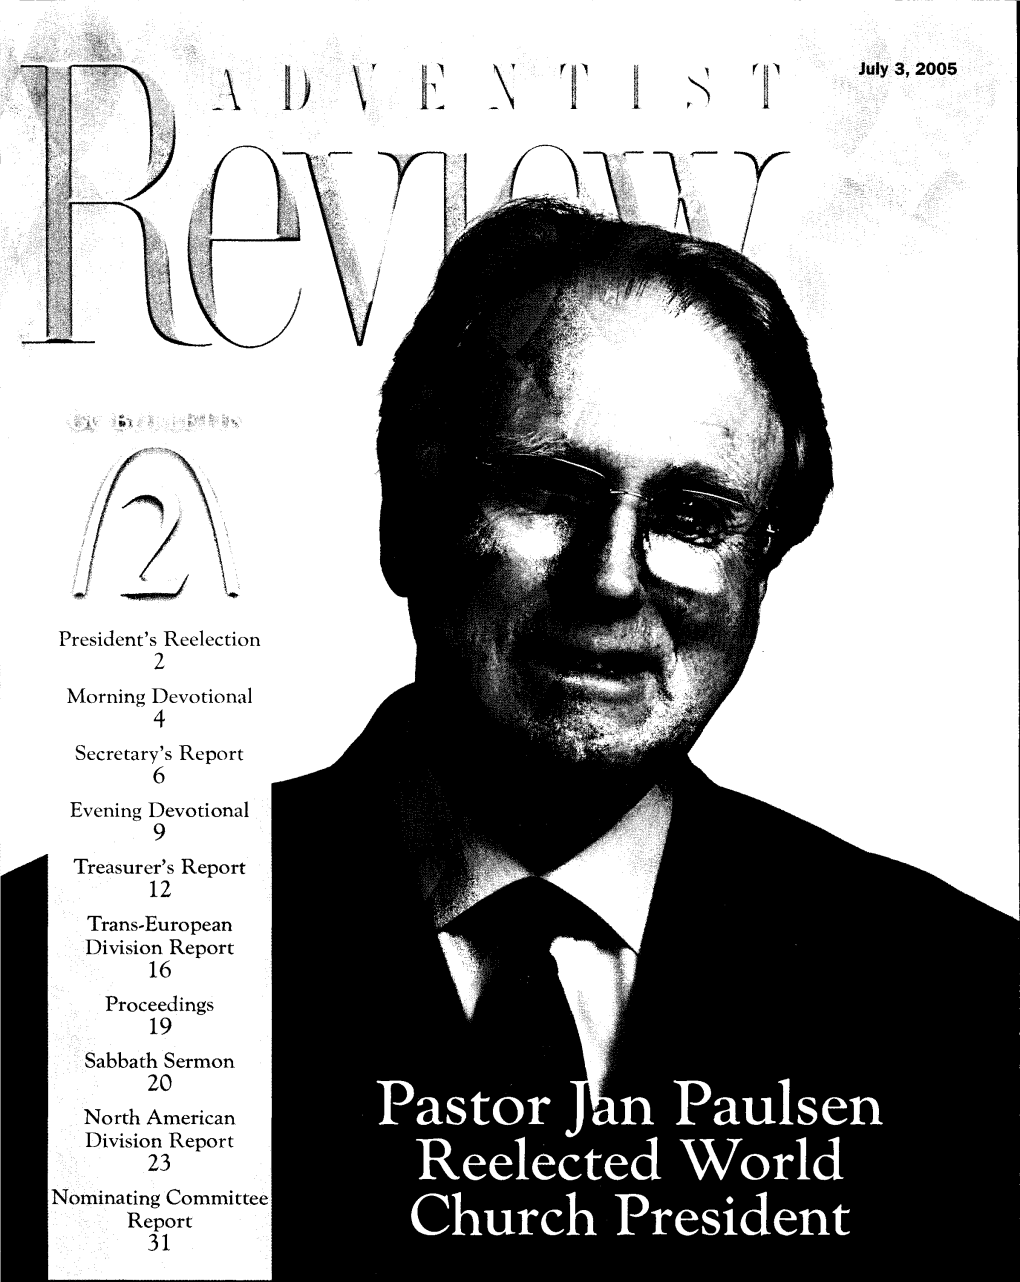 Pastor Jan Paulsen Reelected World Church President